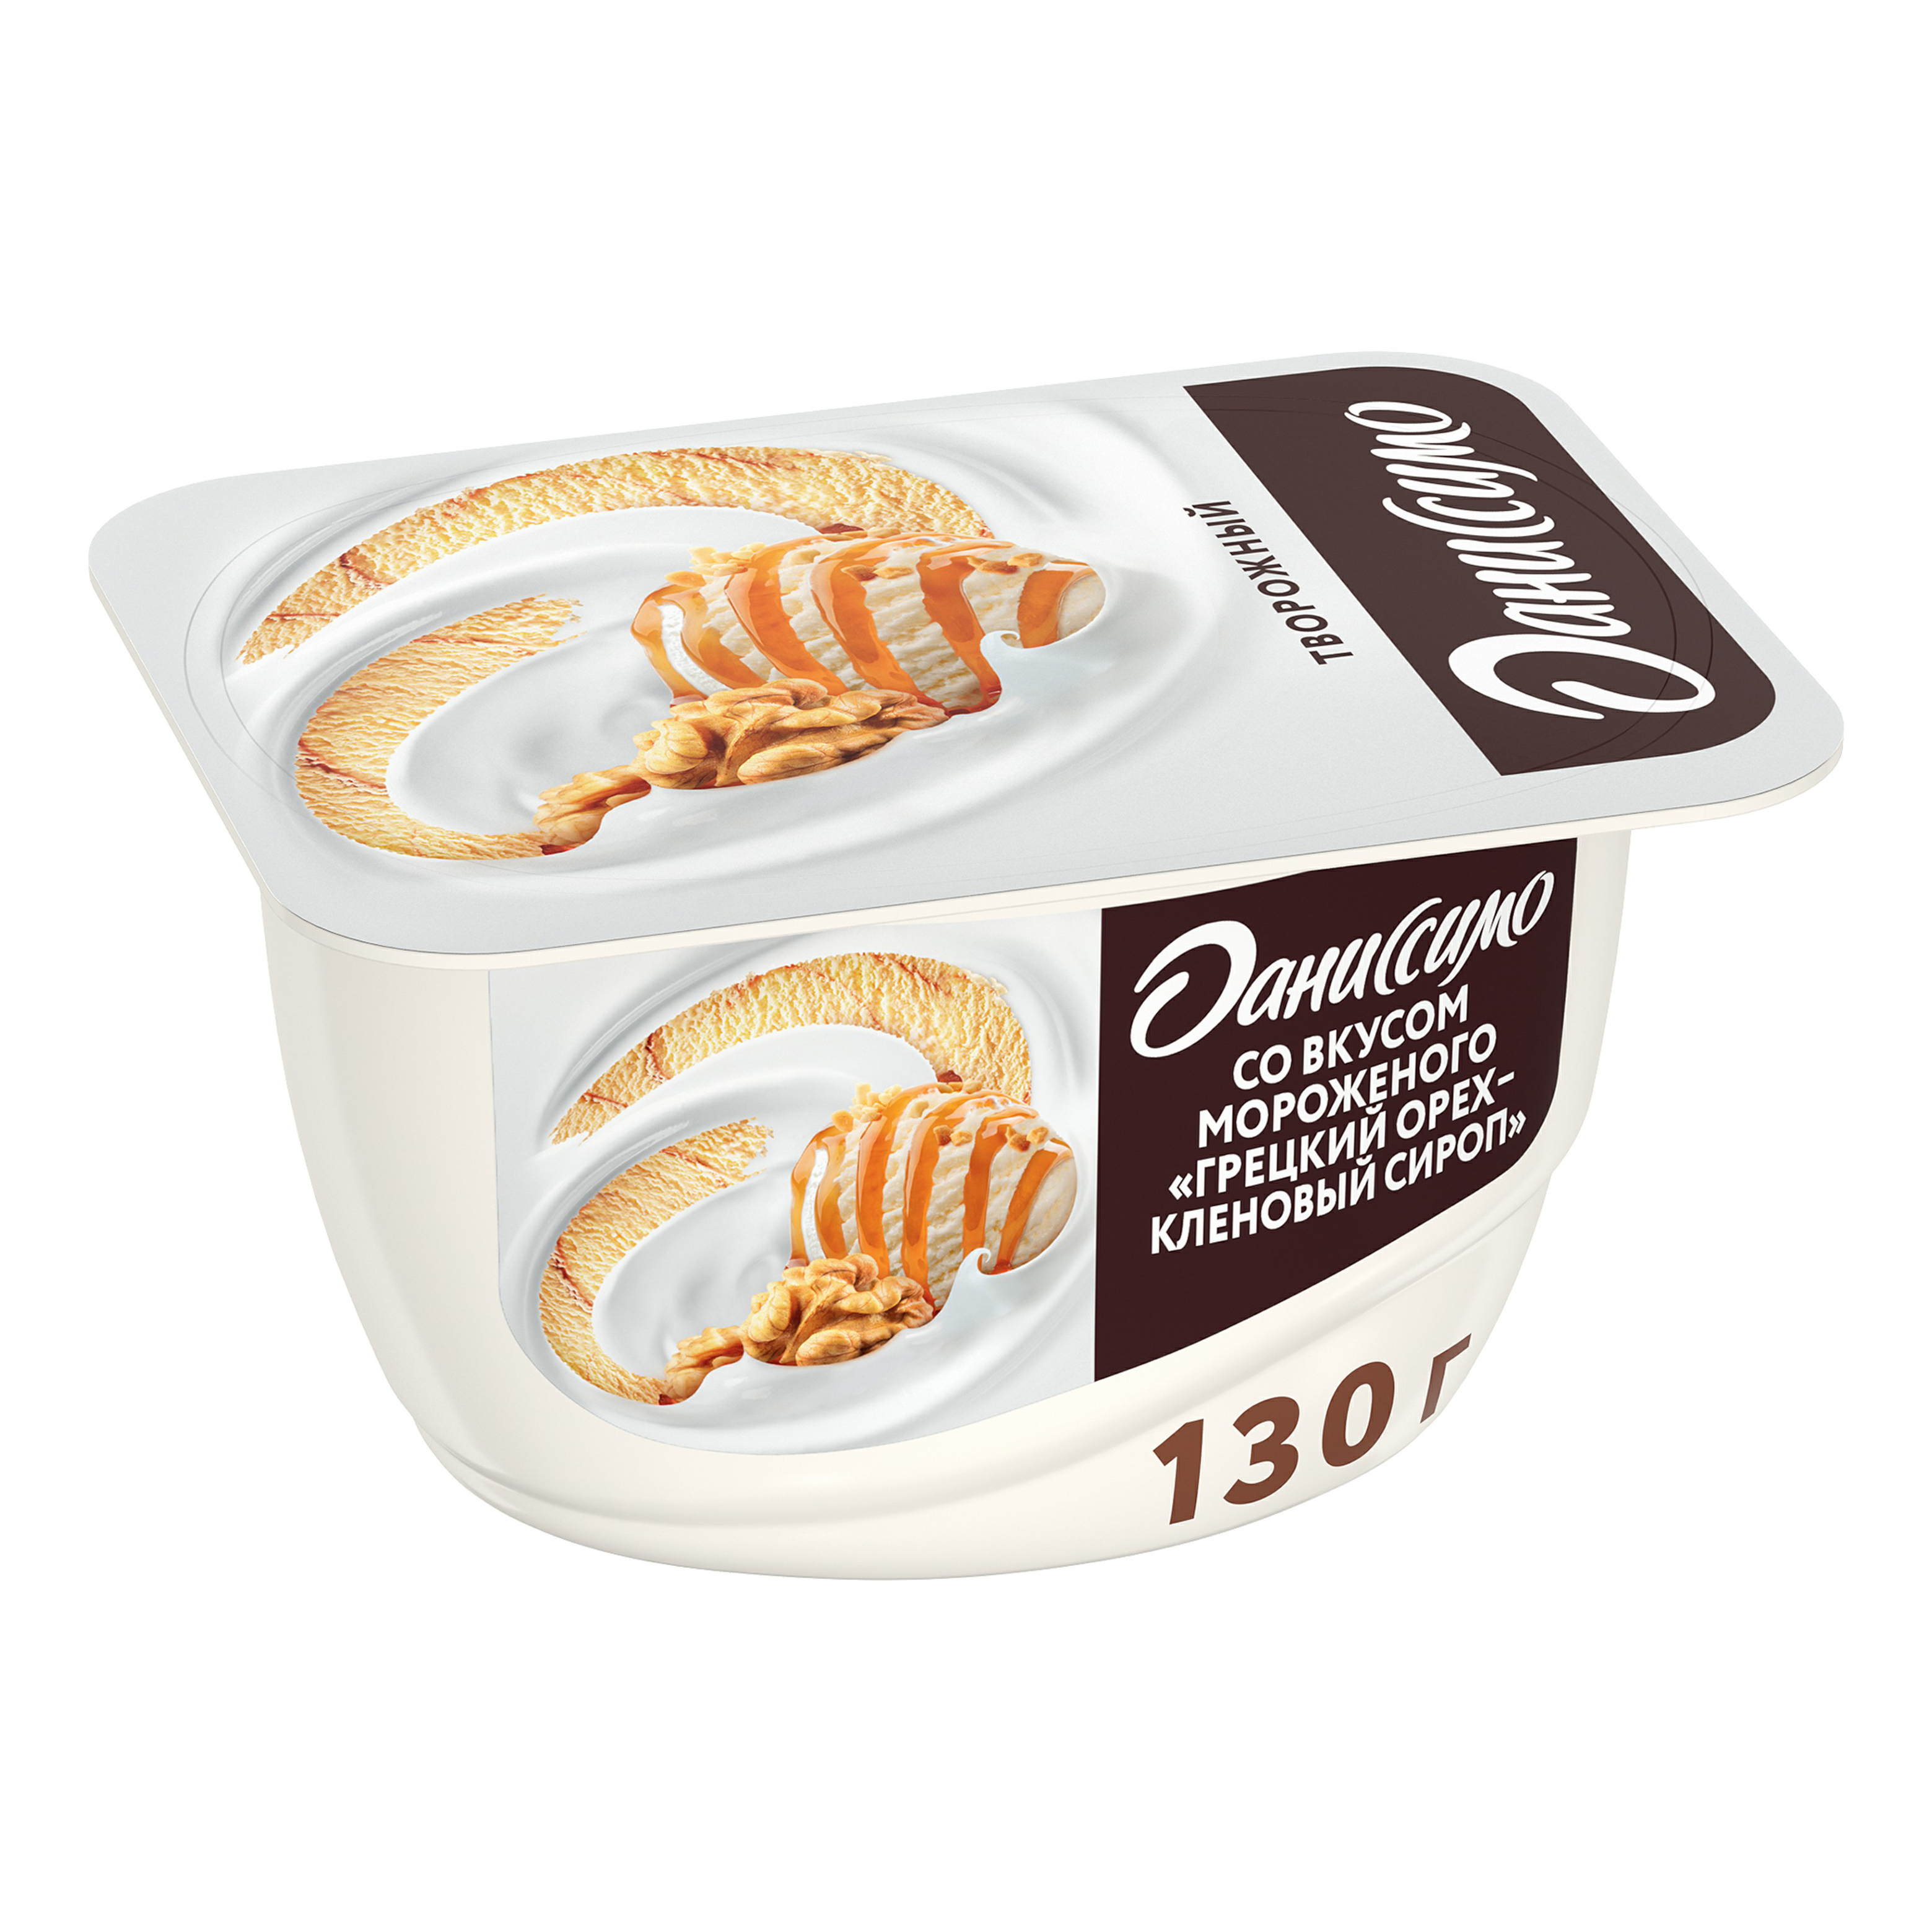 фото Продукт творожный danone даниссимо мороженое-грецкий орех-кленовый сироп 5,9% 130 г